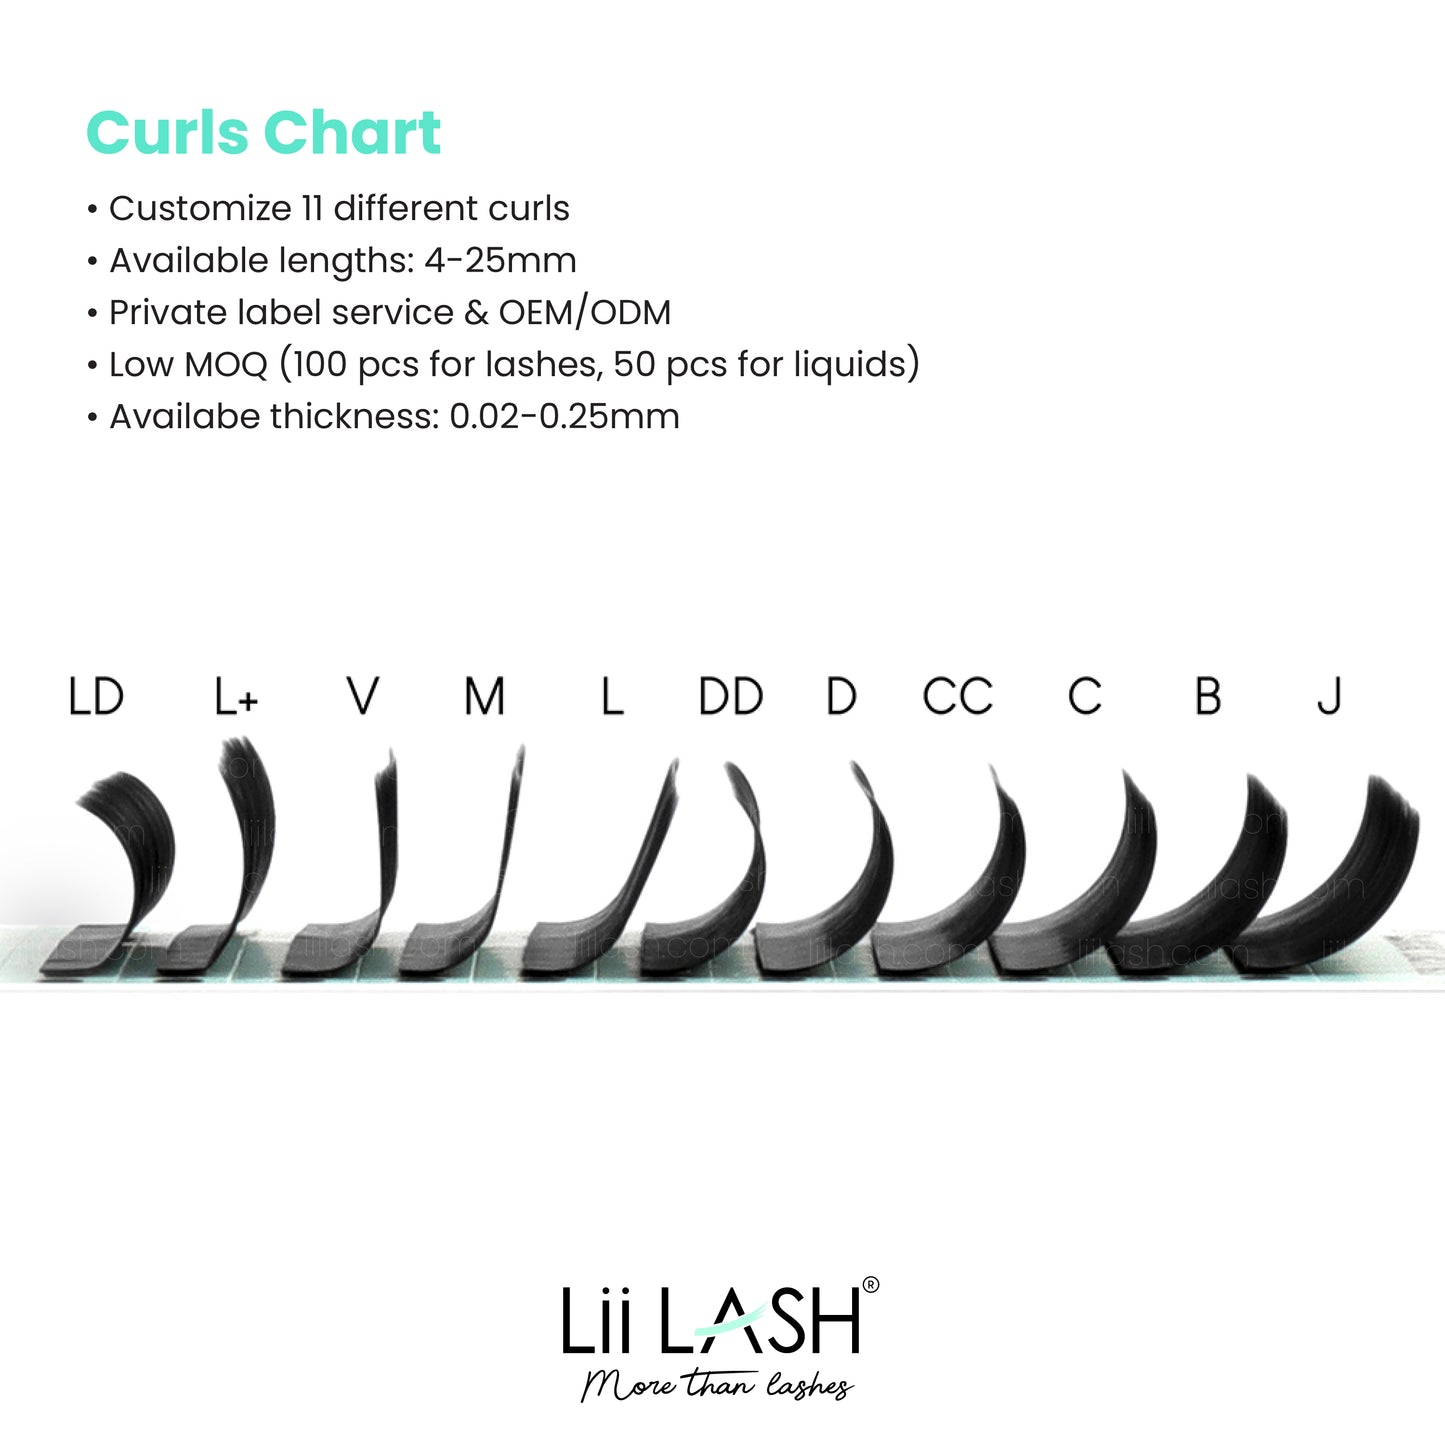 Curls chart - wholesale Premium lash extension manufacturer & retailer